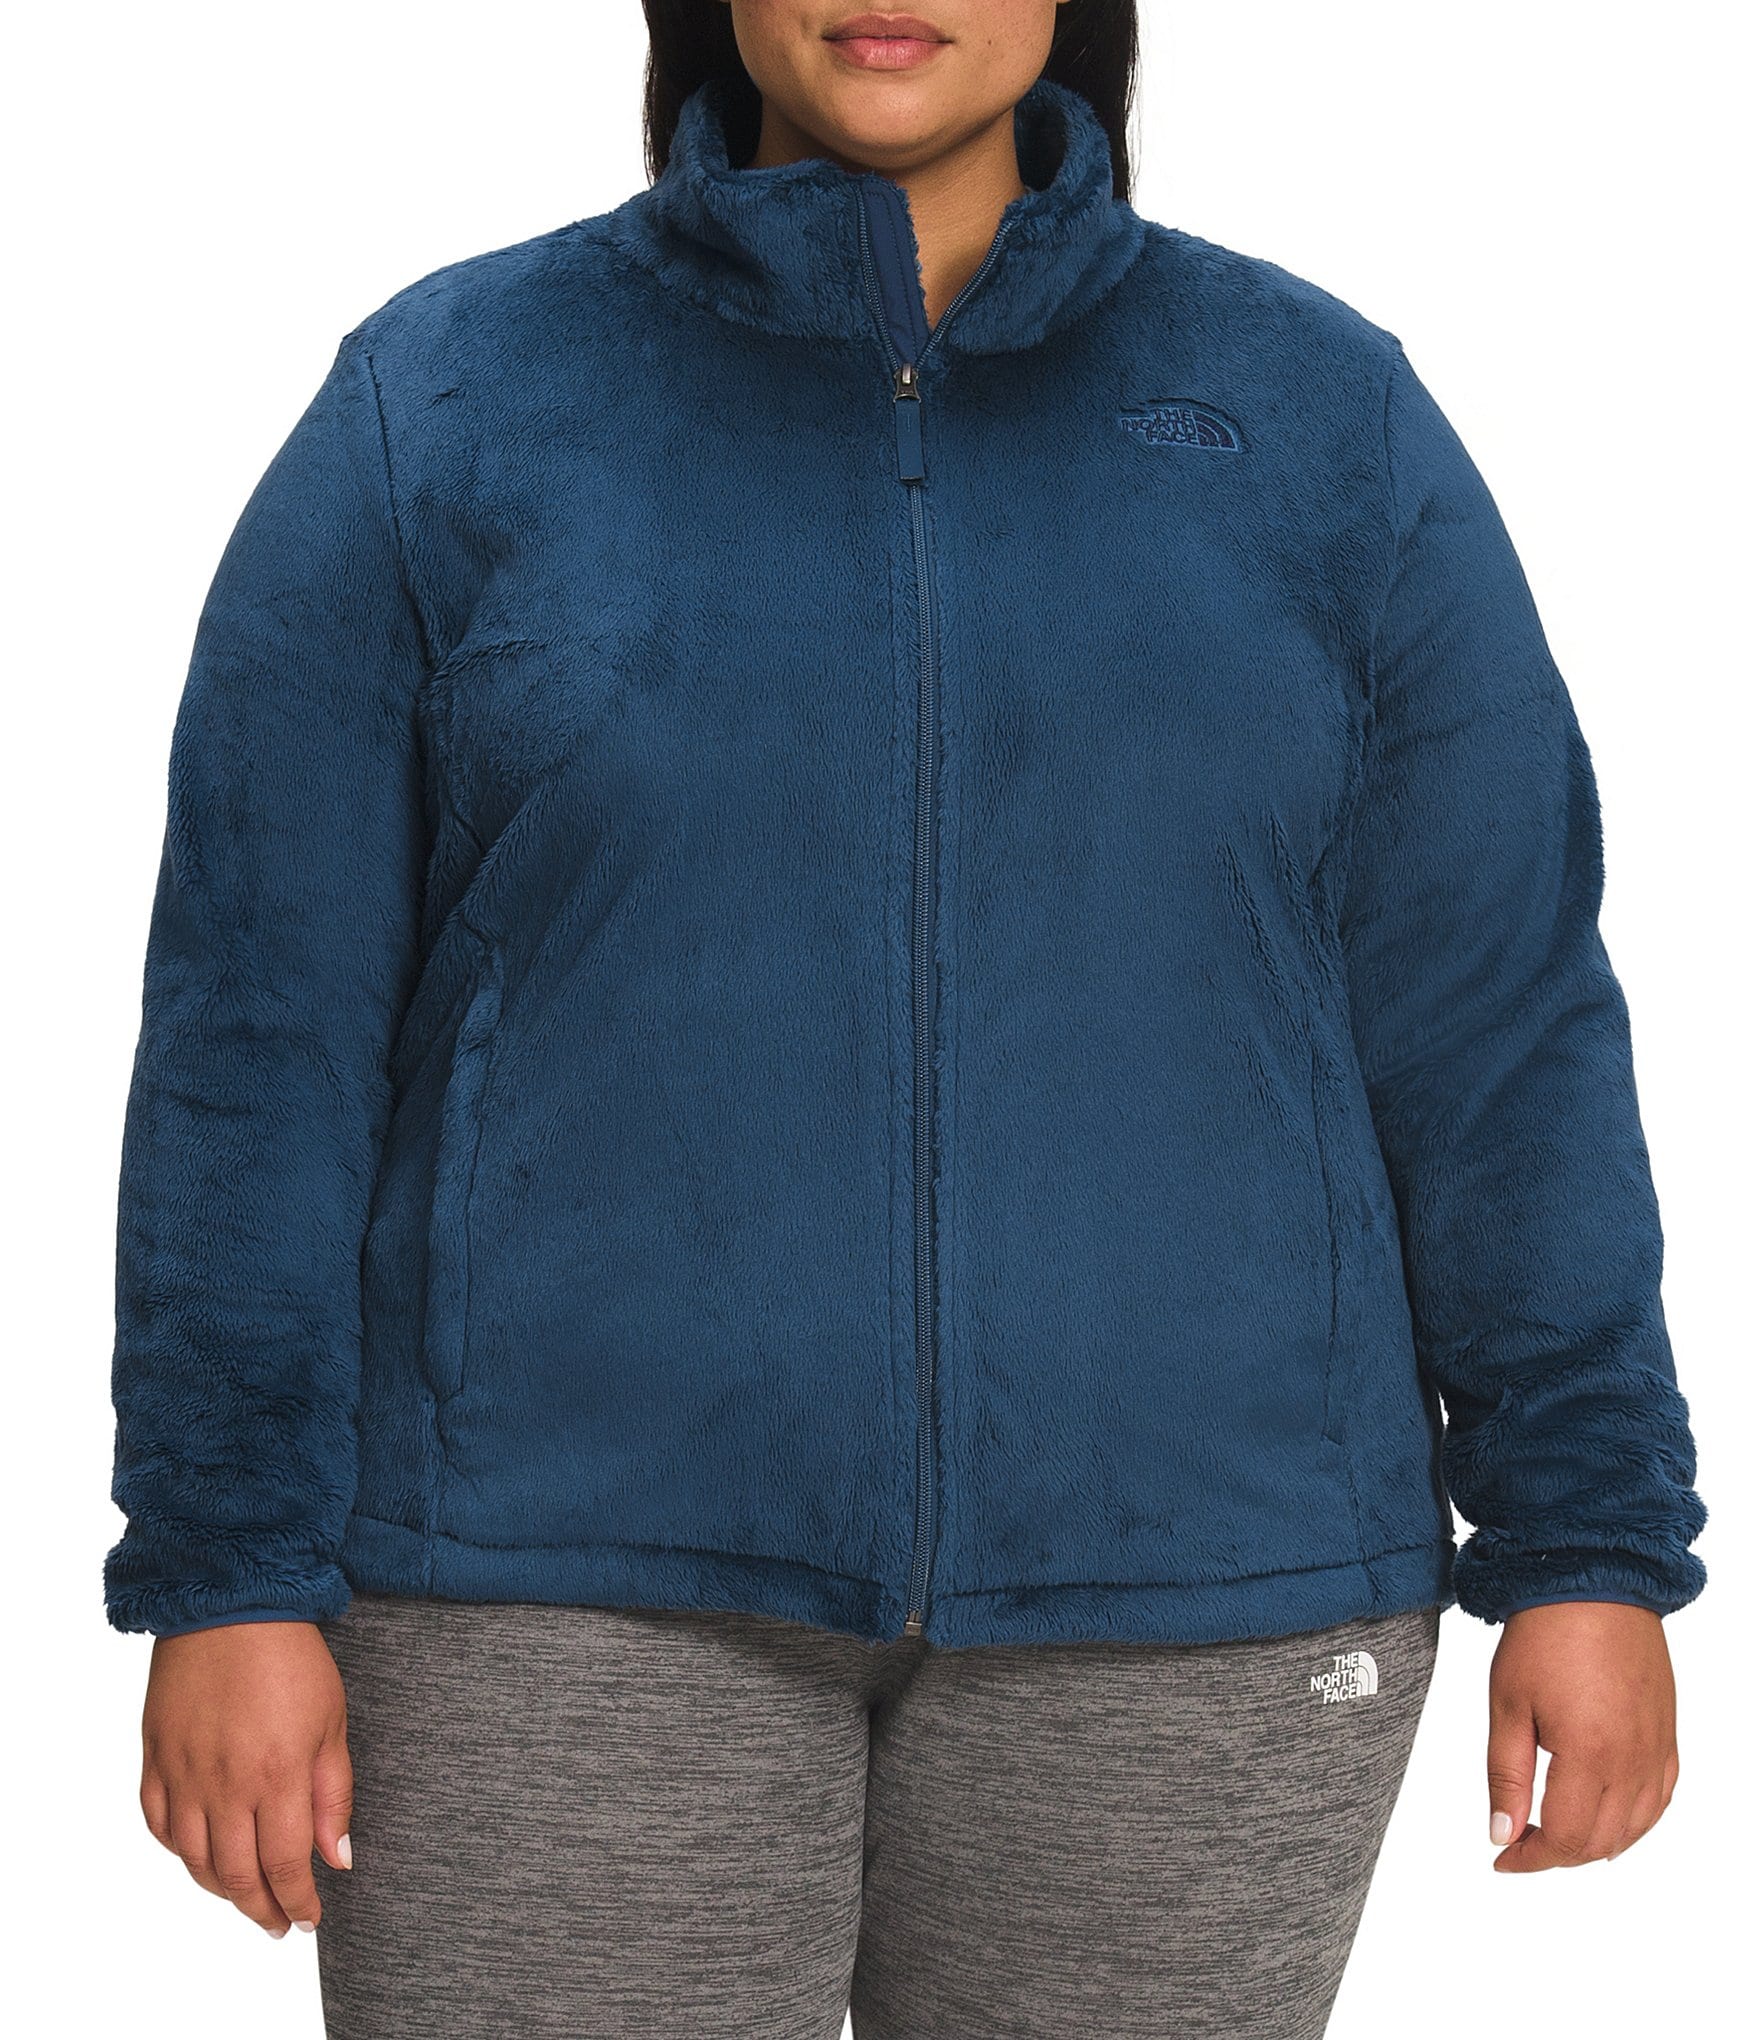 FcuteL Sweatsuits for Women Cuasal Plus Size Zipper Stripe Jackets